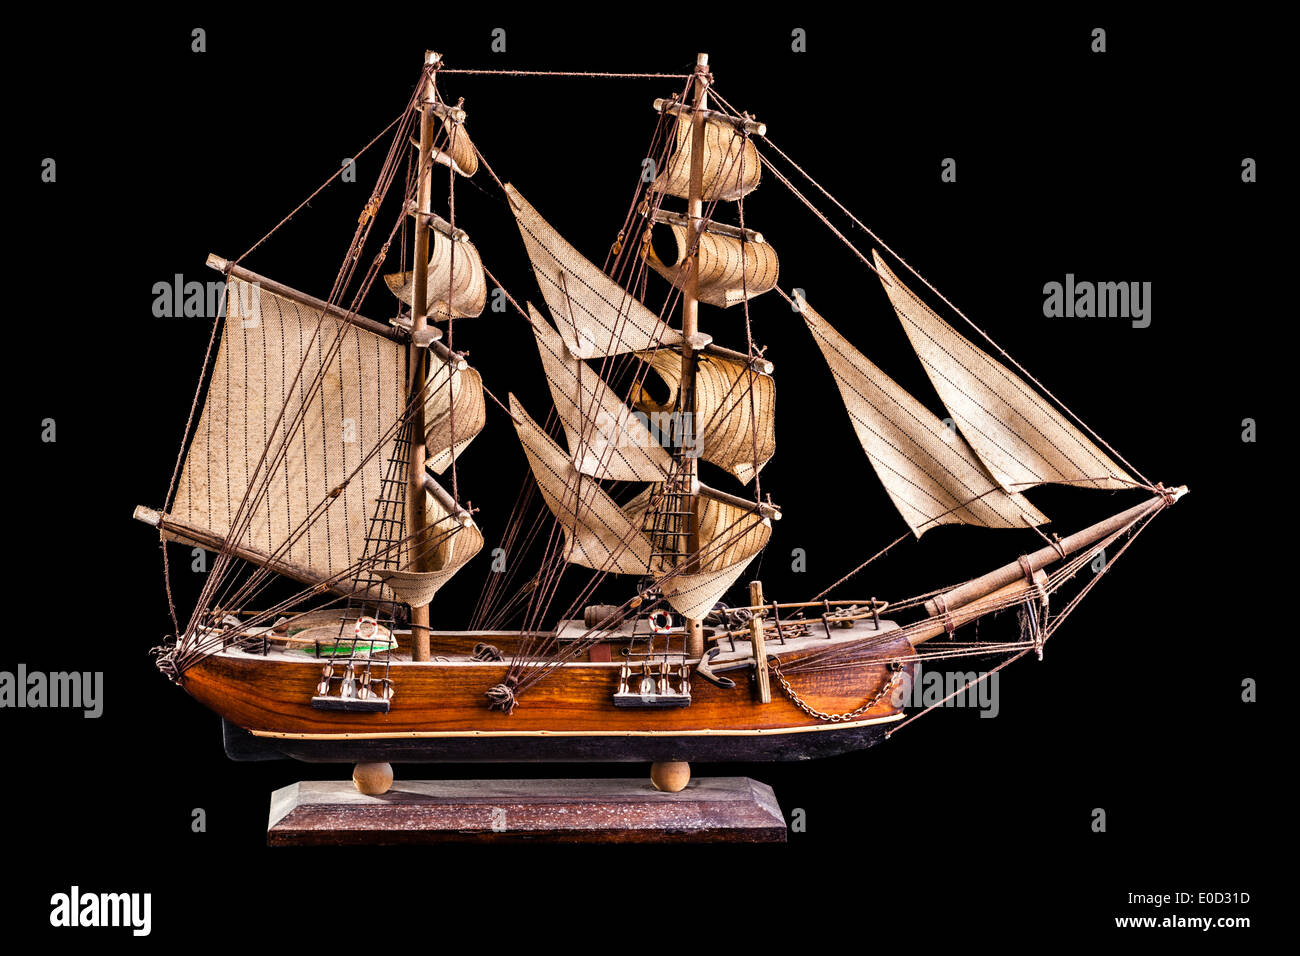 Un trois-mâts barque est un navire à voile comportant trois mâts ayant l'foremasts rigged square et seul le aftermast rigged avant-arrière. Banque D'Images